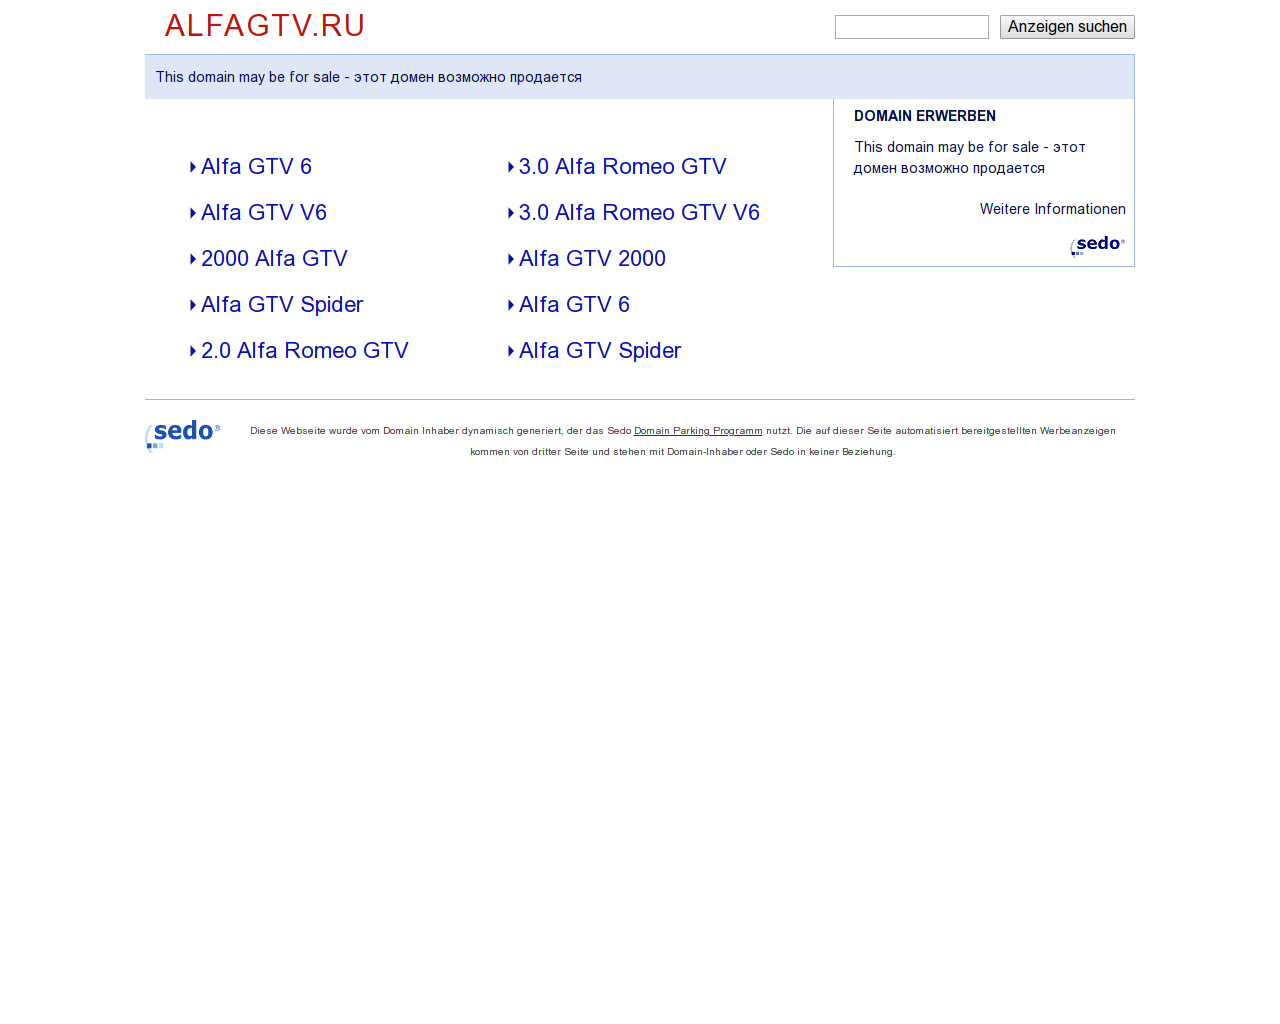 Изображение сайта alfagtv.ru в разрешении 1280x1024